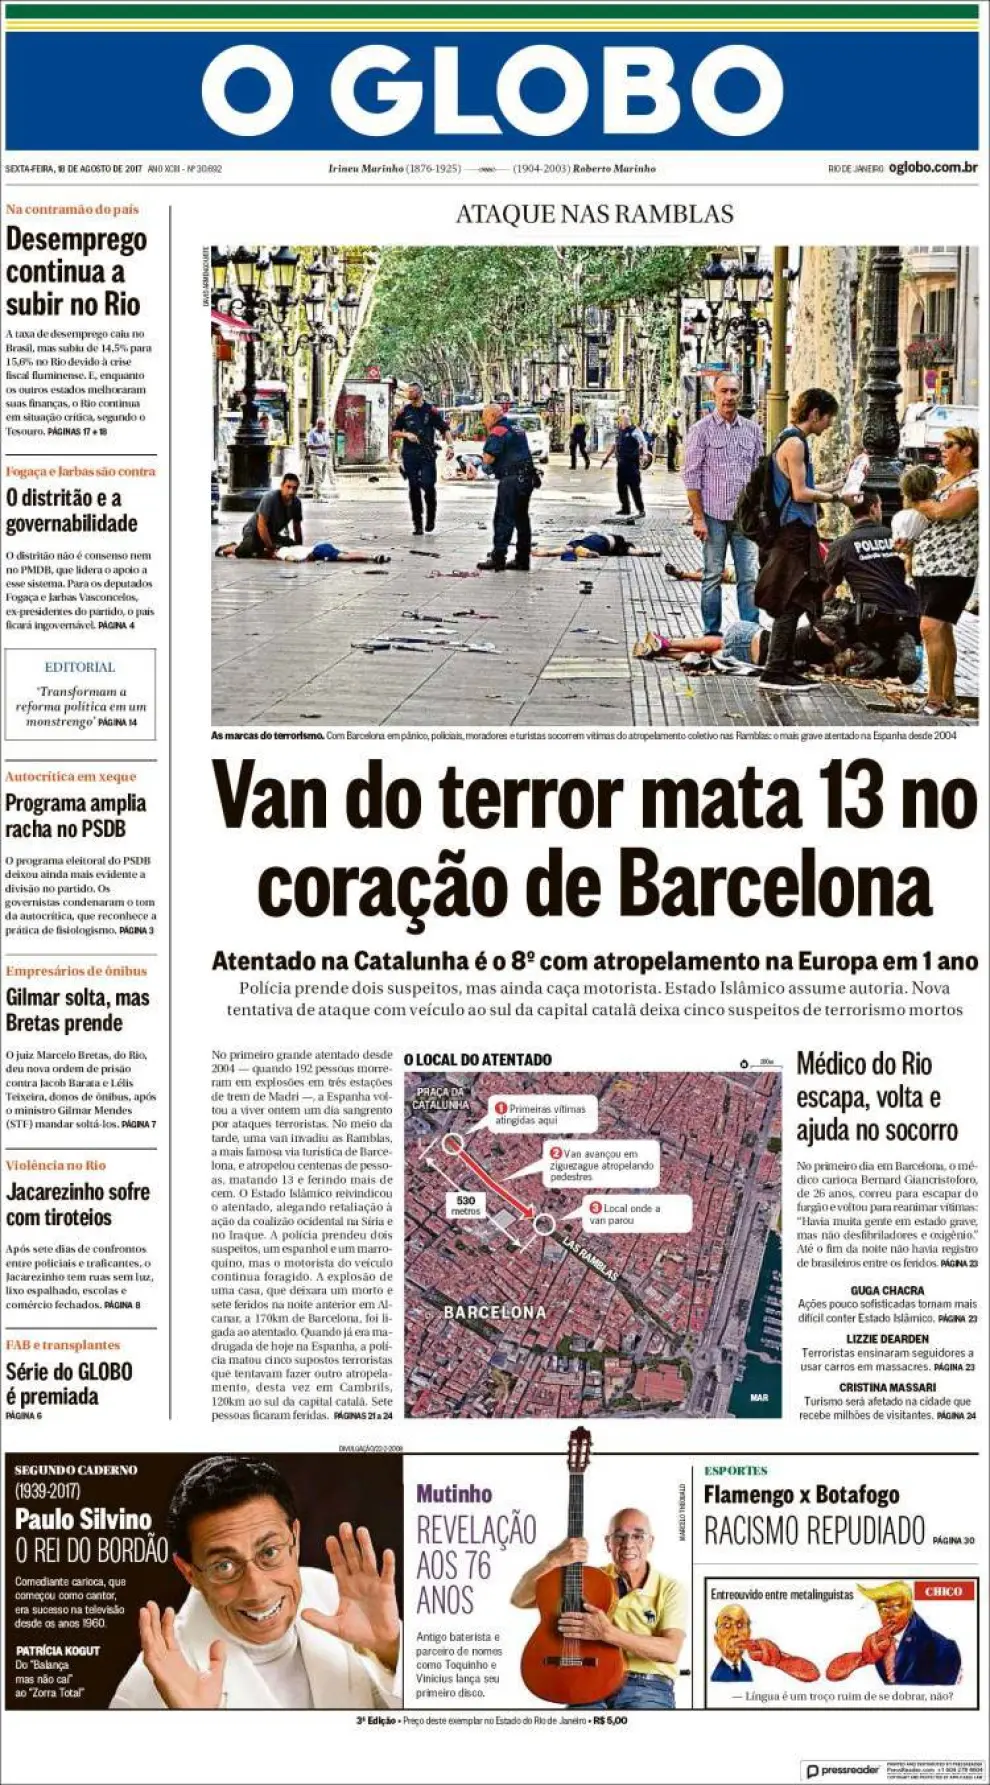 La prensa mundial recoge el "terror" provocado por los atentados en Cataluña